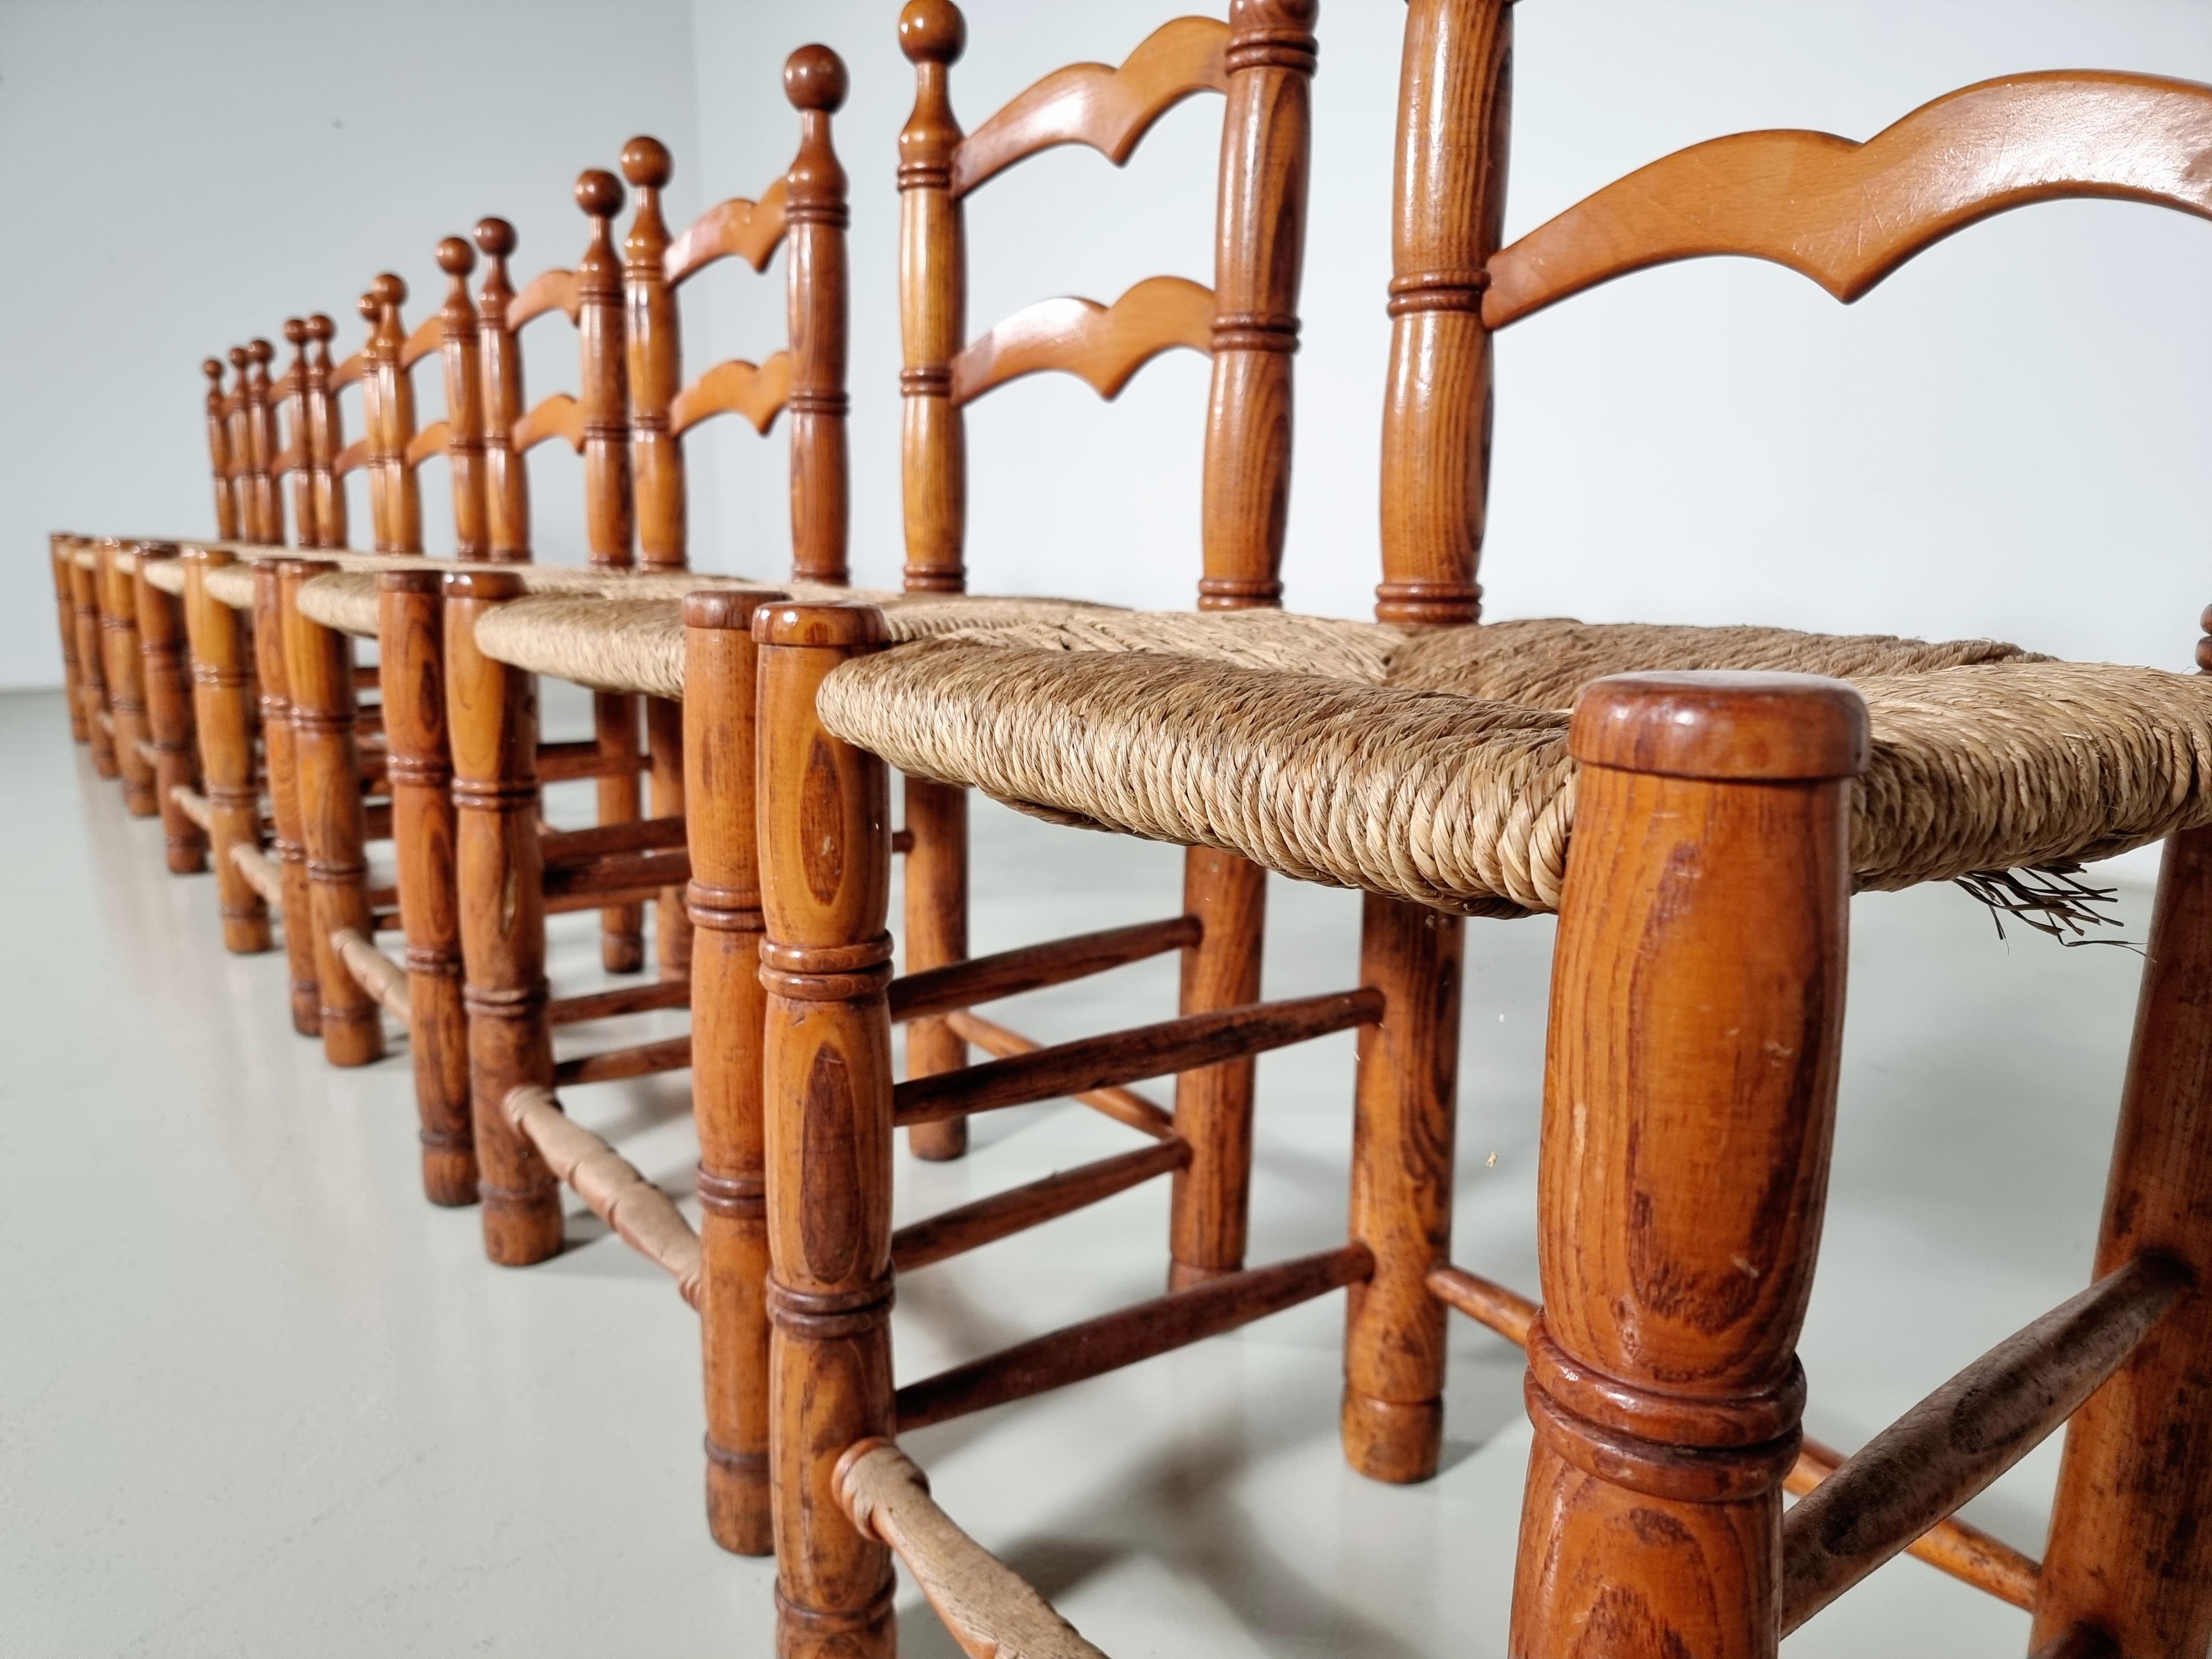 Satz von 12 rustikalen Esszimmerstühlen aus Eichenholz mit geflochtenen Binsensitzen, hergestellt in Frankreich in den 1970er Jahren. Die Eichenholzrahmen sind im Originalzustand hell gebeizt. Die Binsen-Sitze sind original und in gutem Zustand.
 